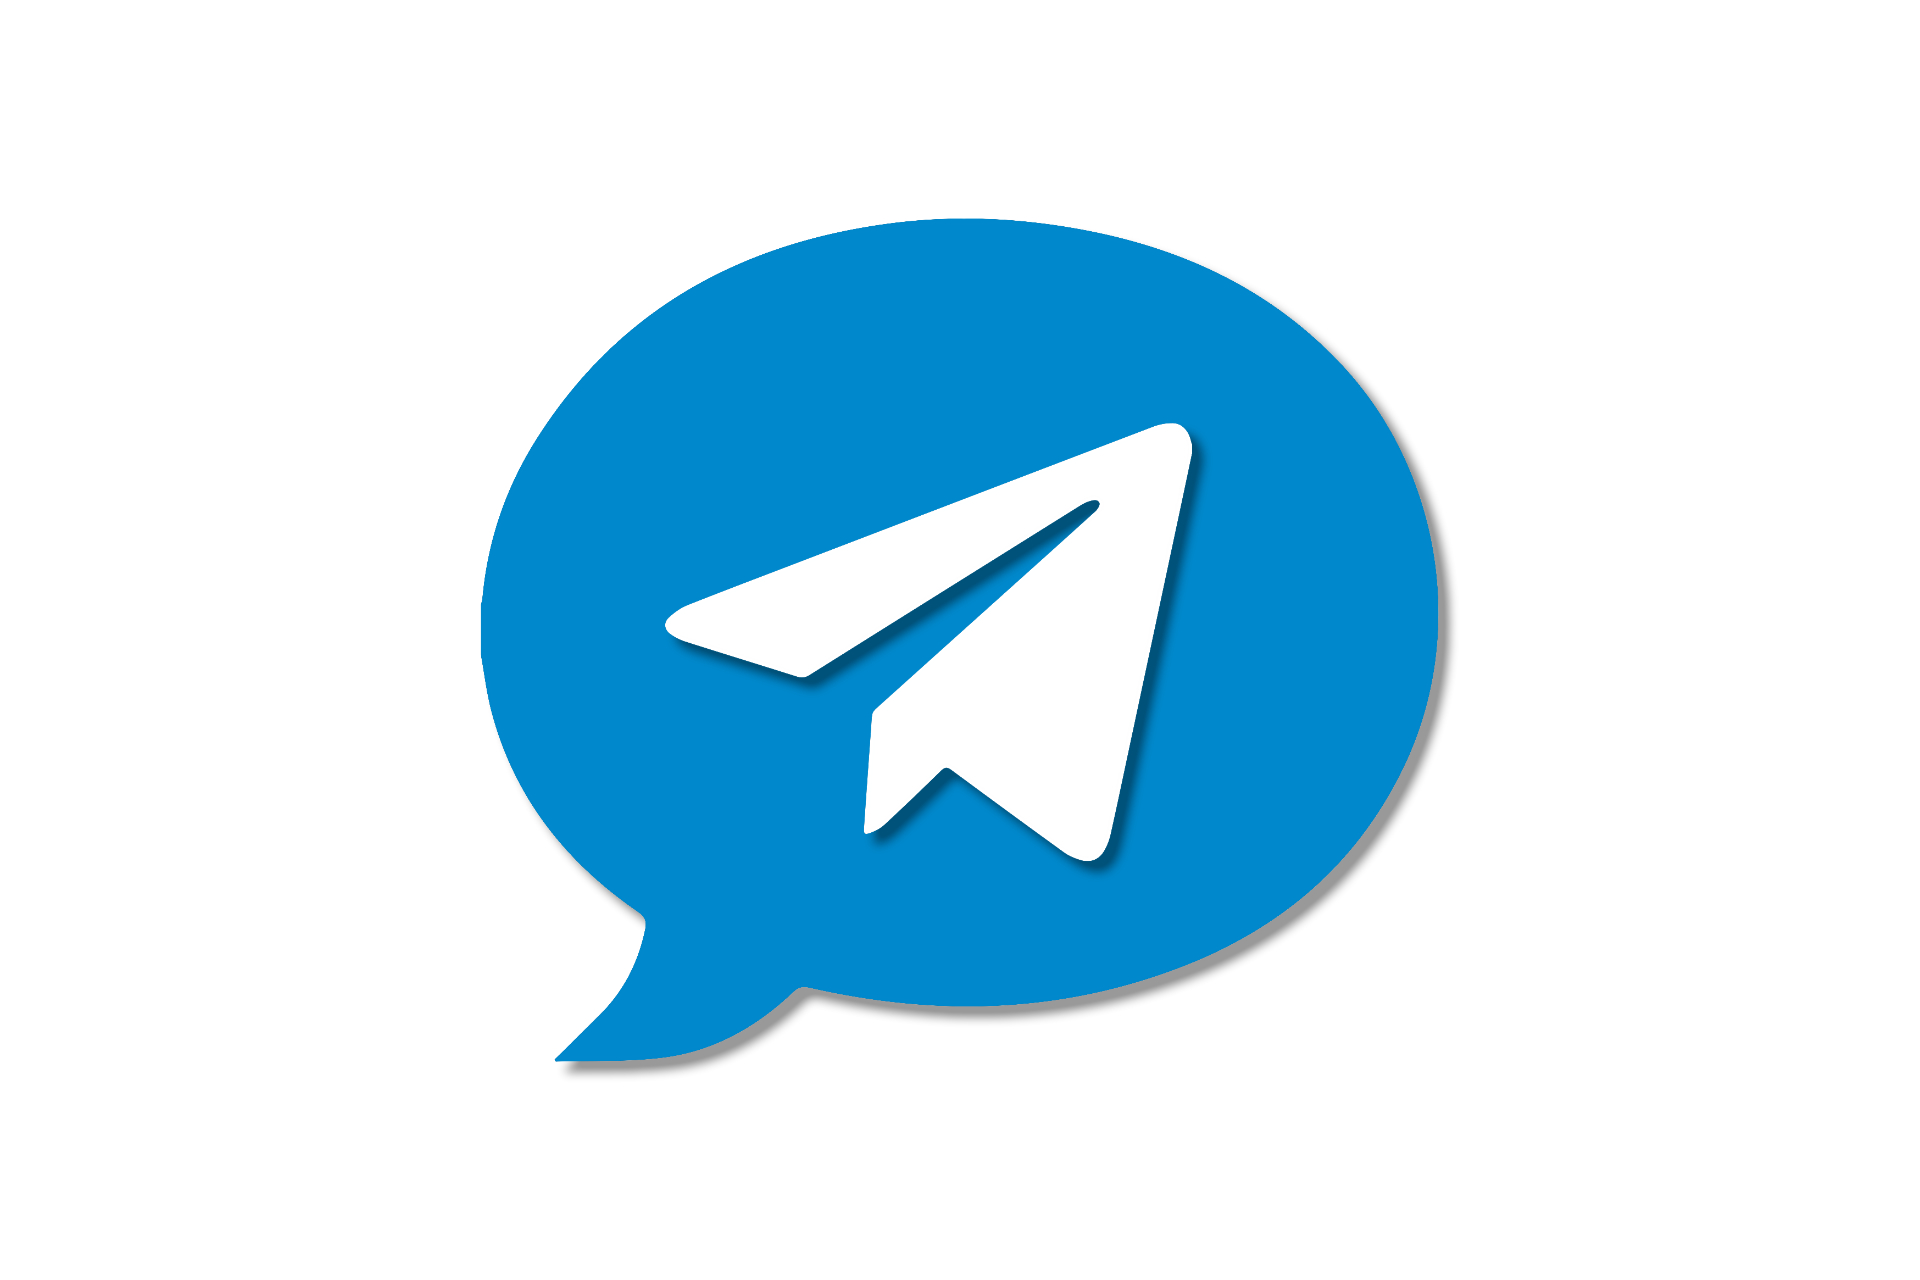 Telegram Marketing